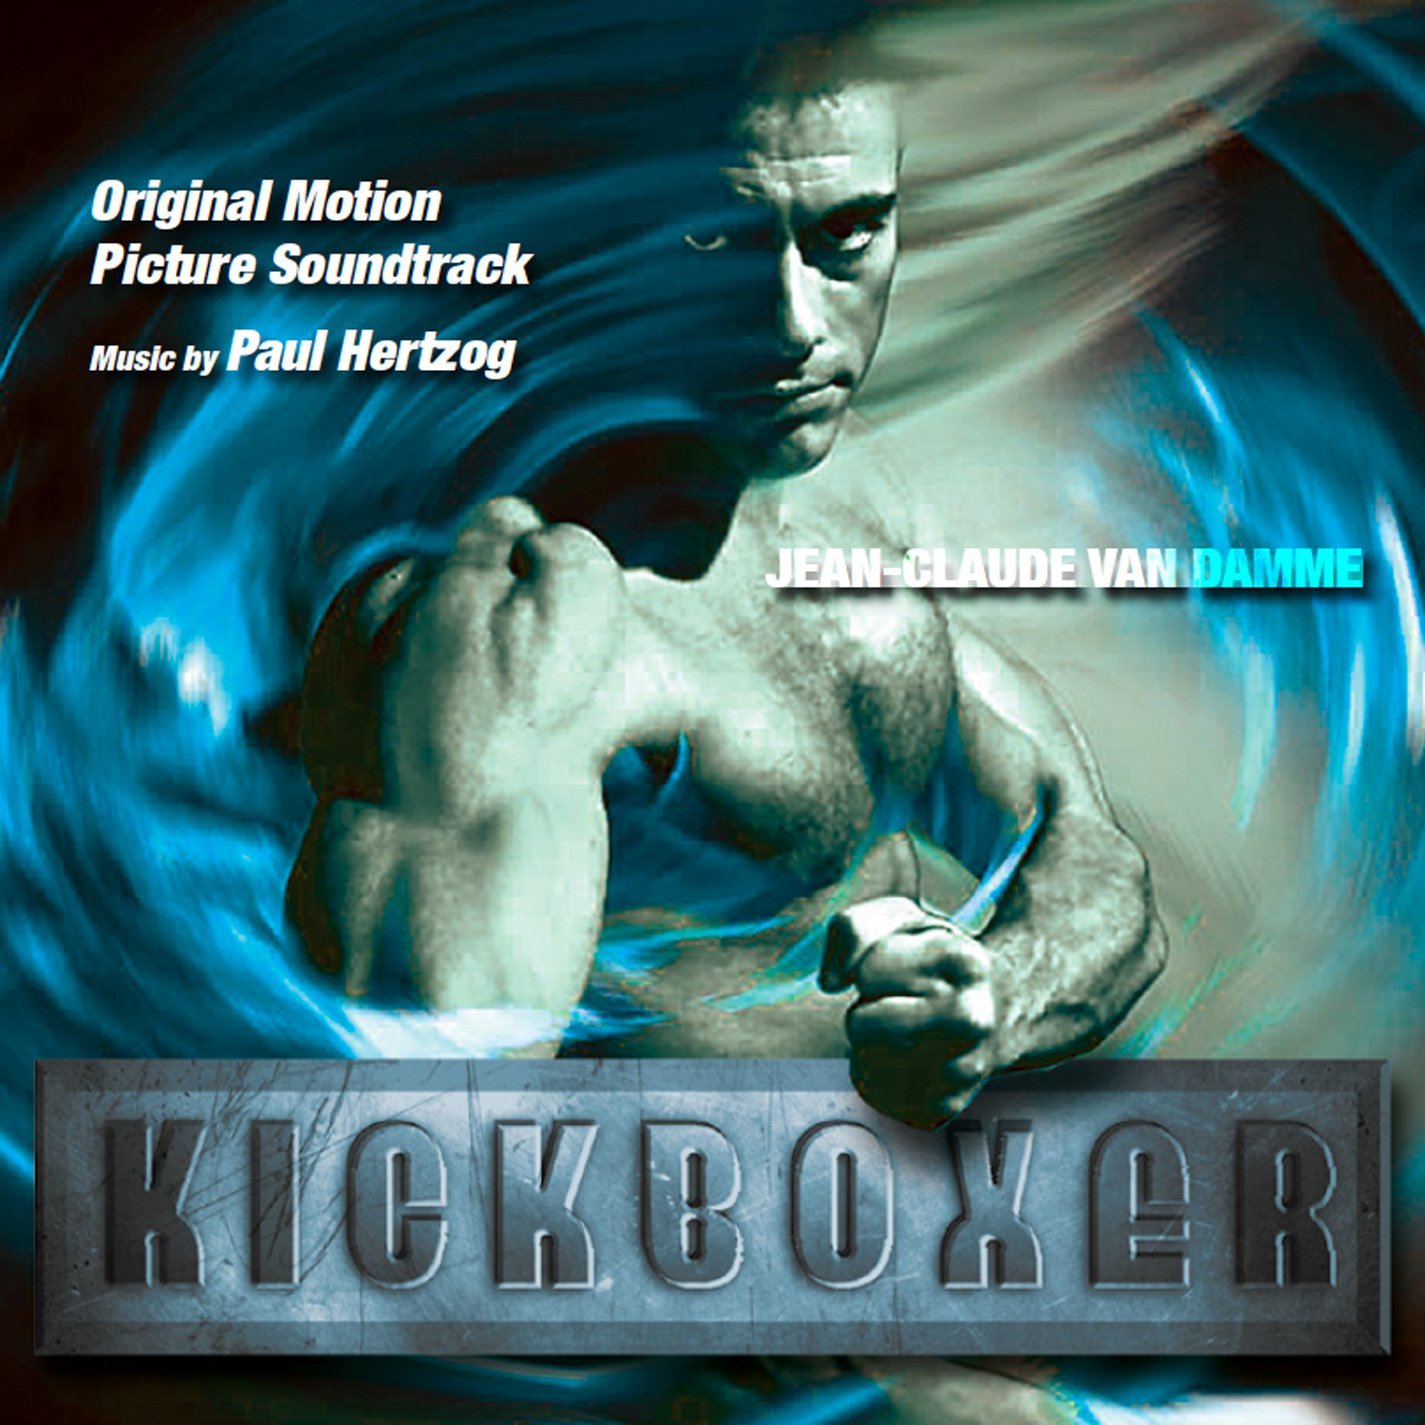 Kickboxer – Deluxe Edition (Paul Hertzog), Detalles del álbum